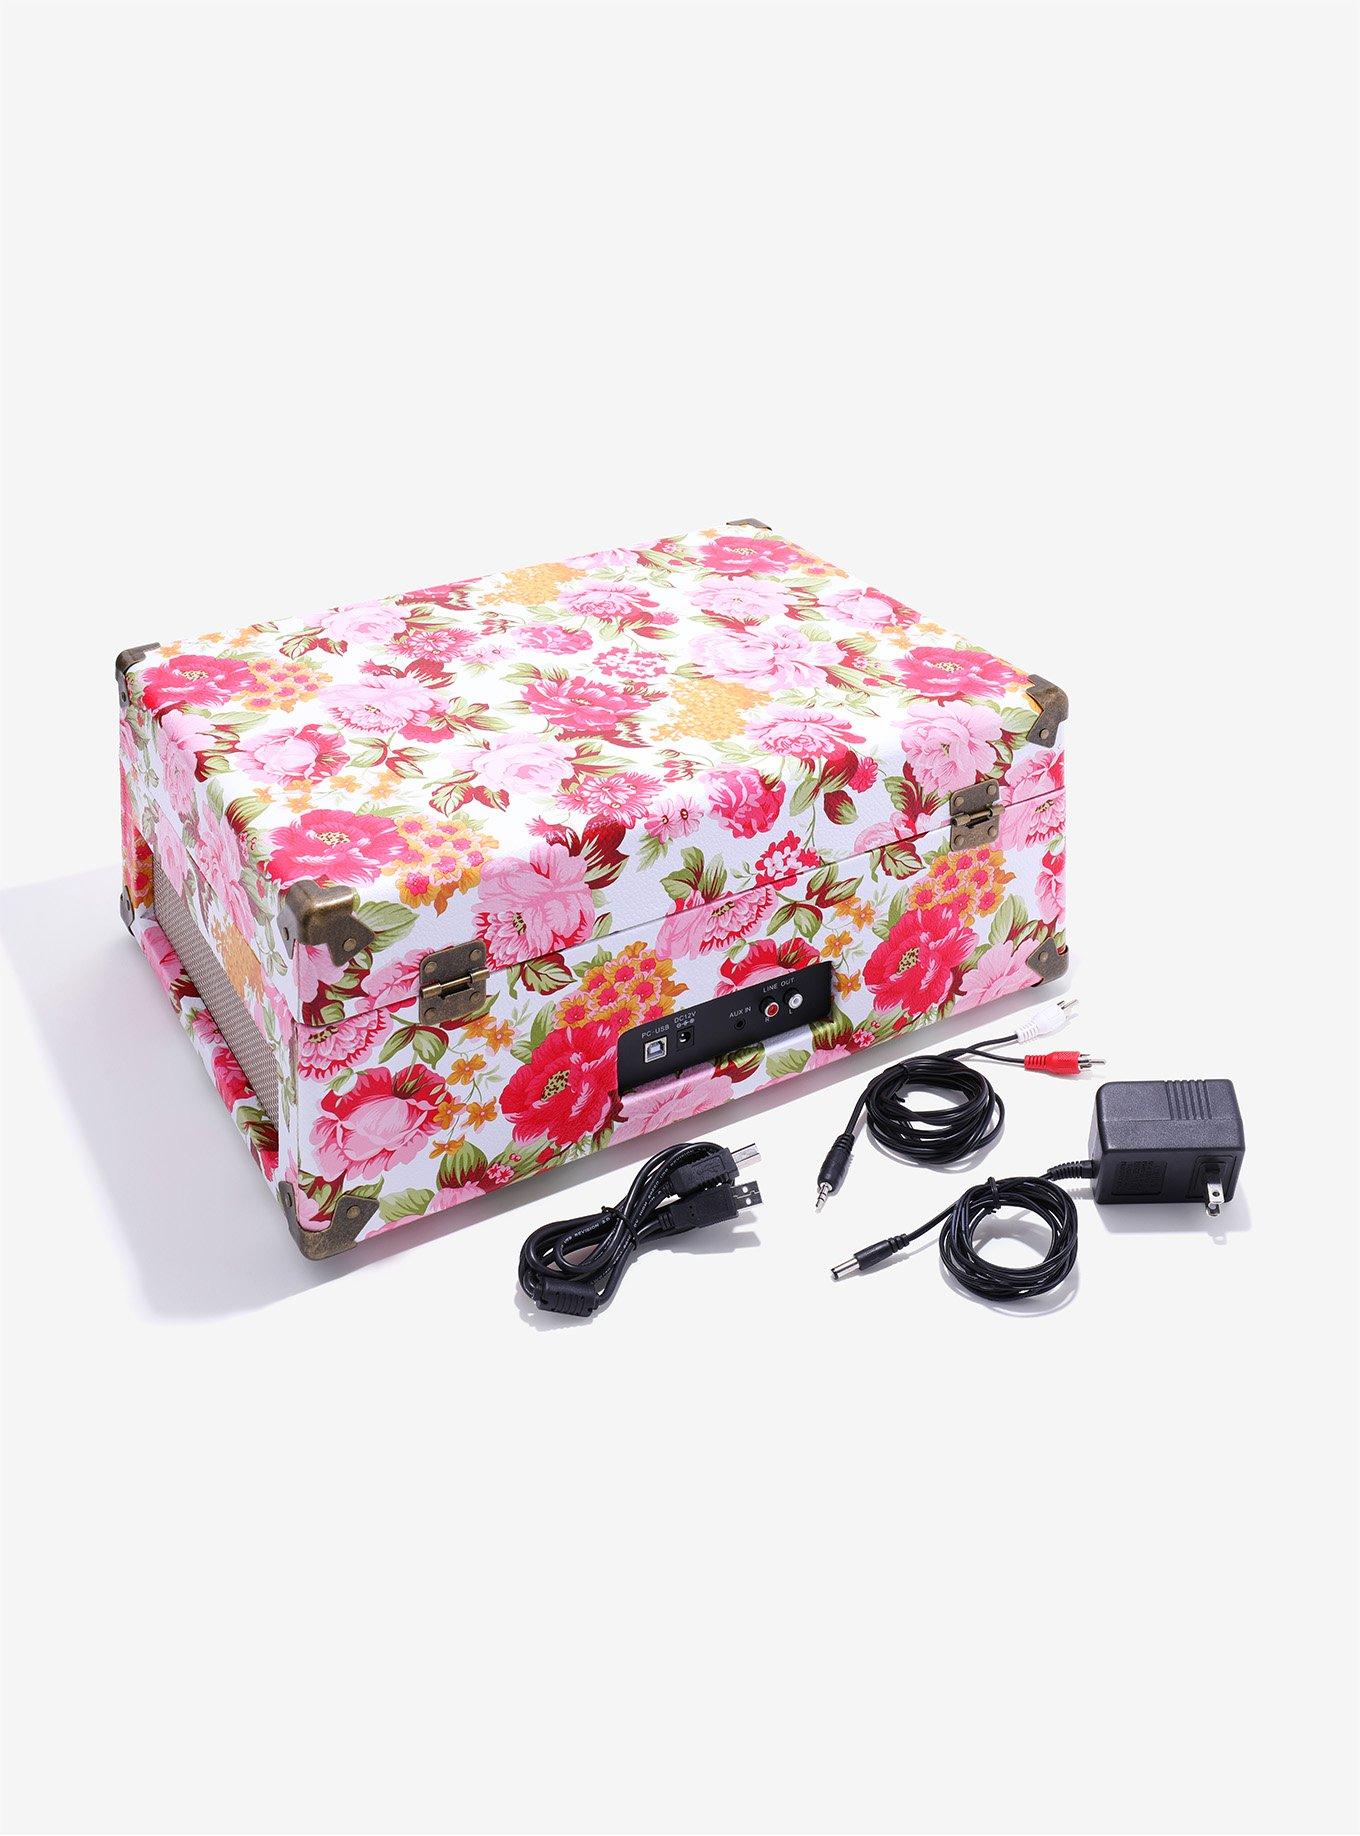 Crosley Radio Keepsake Portable Turntable - Pink Floral, , alternate